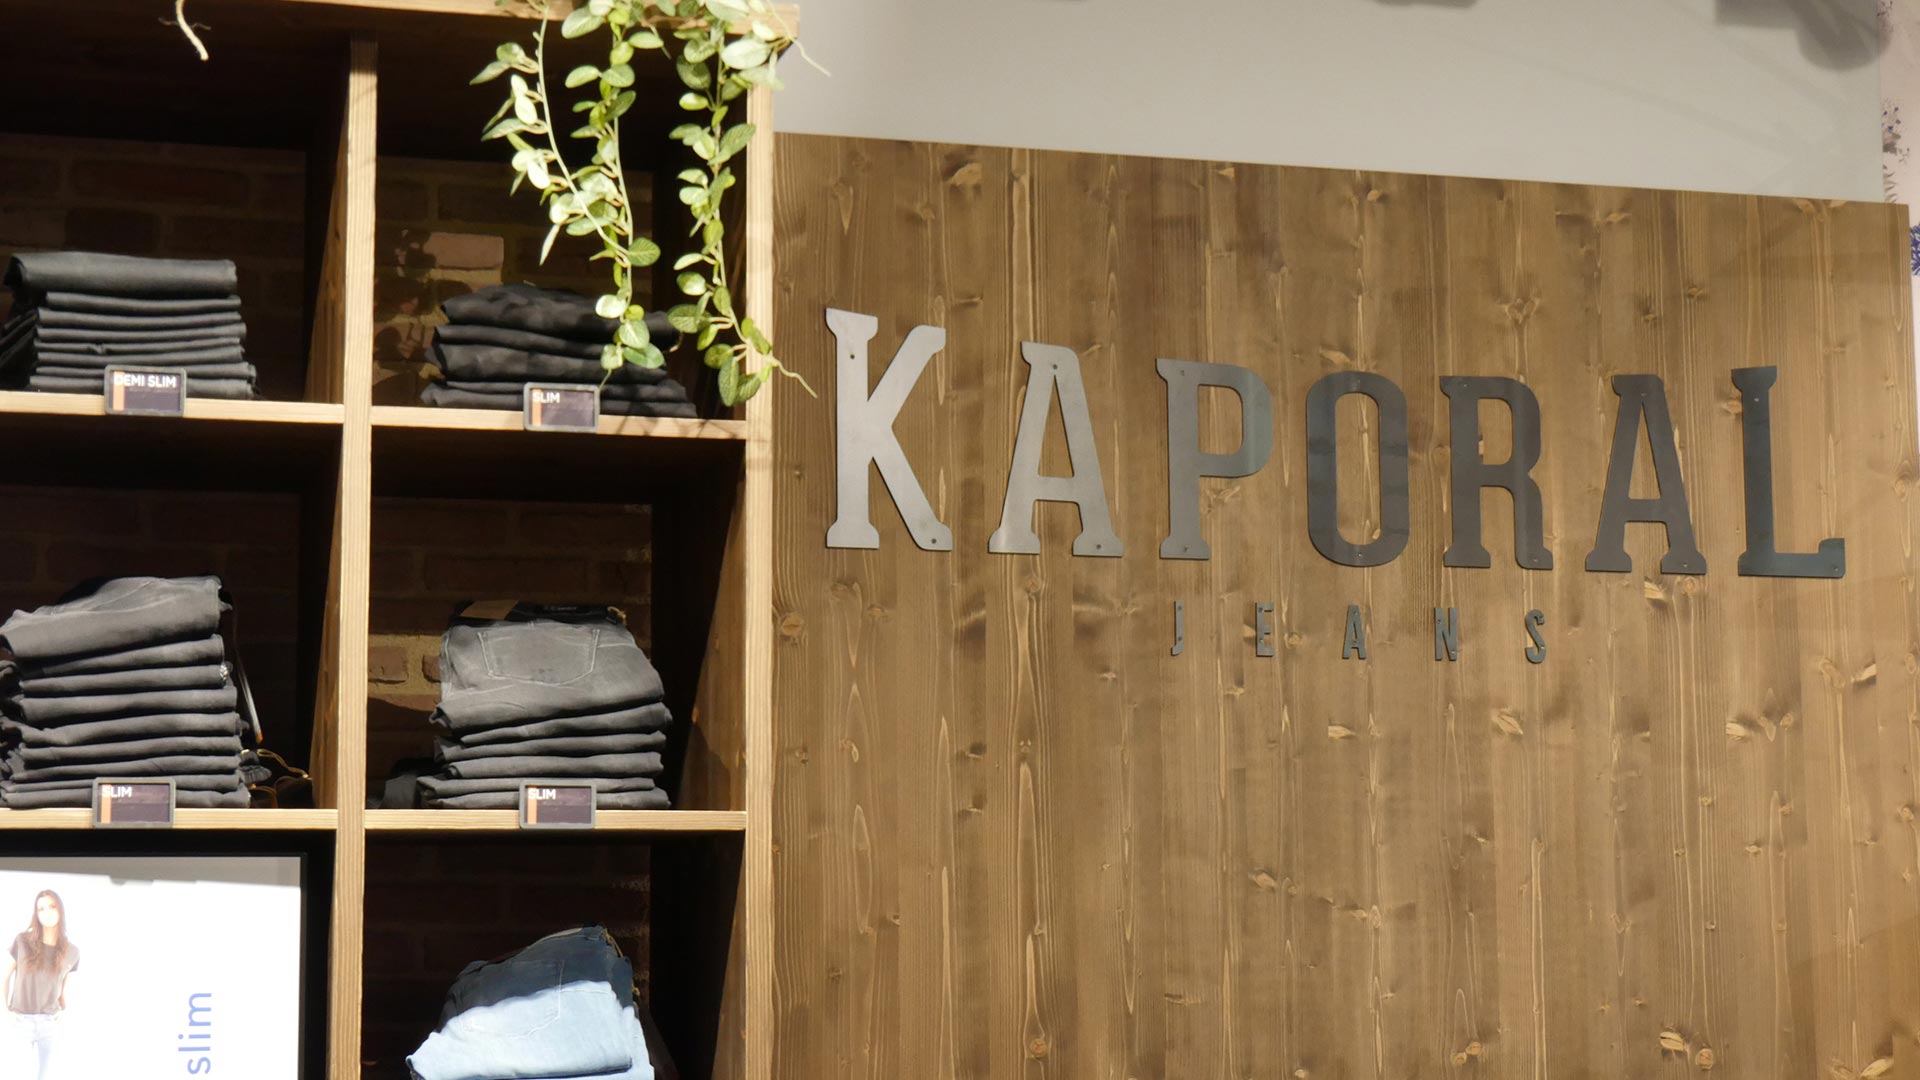 Implémentation et contruction de la boutiques Kaporal à Barcelone